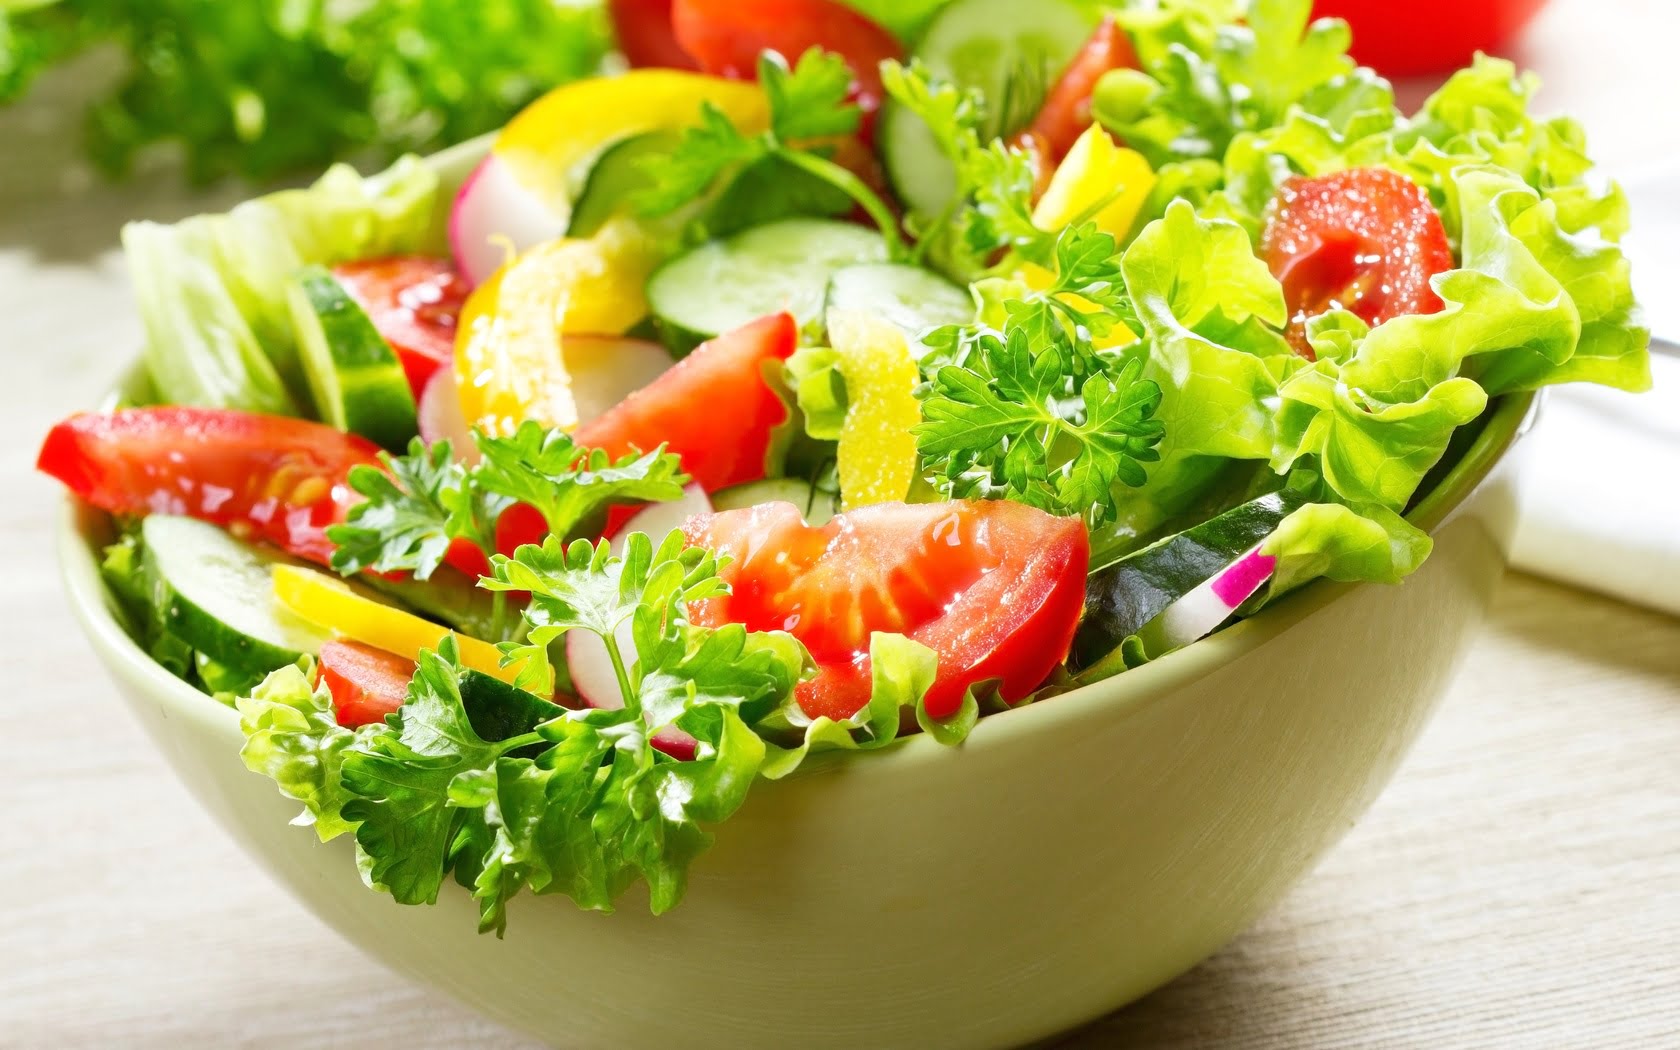 Salad trộn rau củ quả ngon, dễ làm